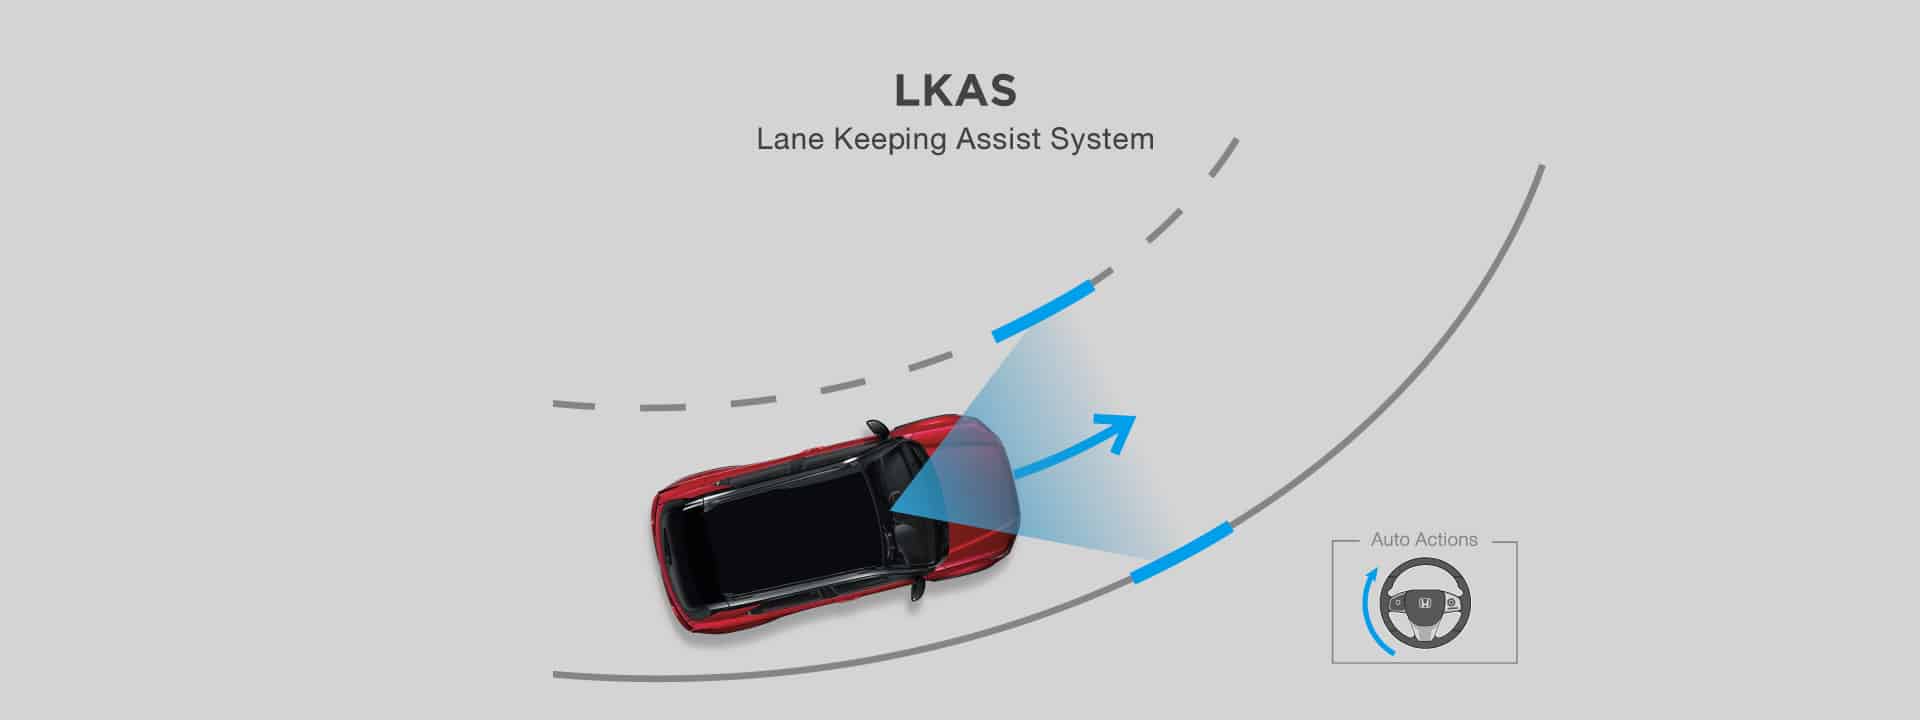 ระบบช่วยควบคุมรถให้อยู่ในเลนปกติ LKAS